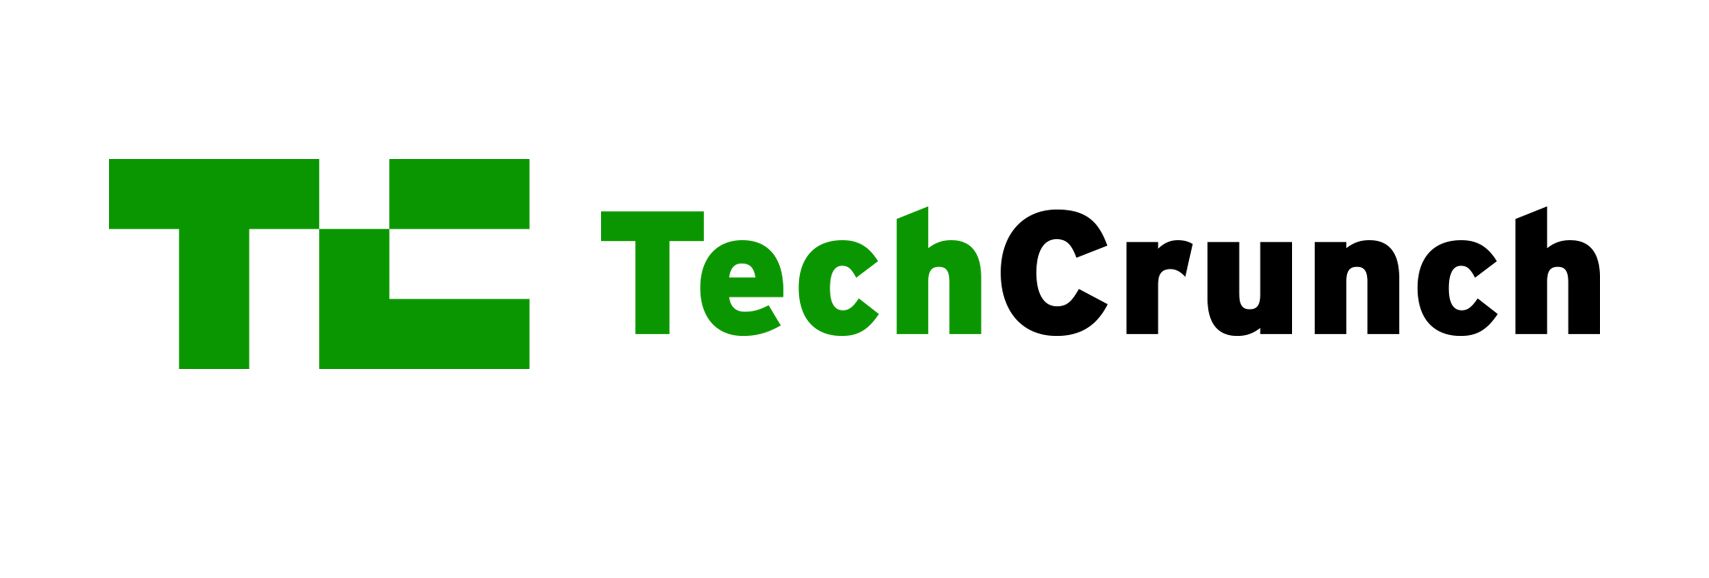 techcrunch-logo - UC Berkeley Sutardja Center